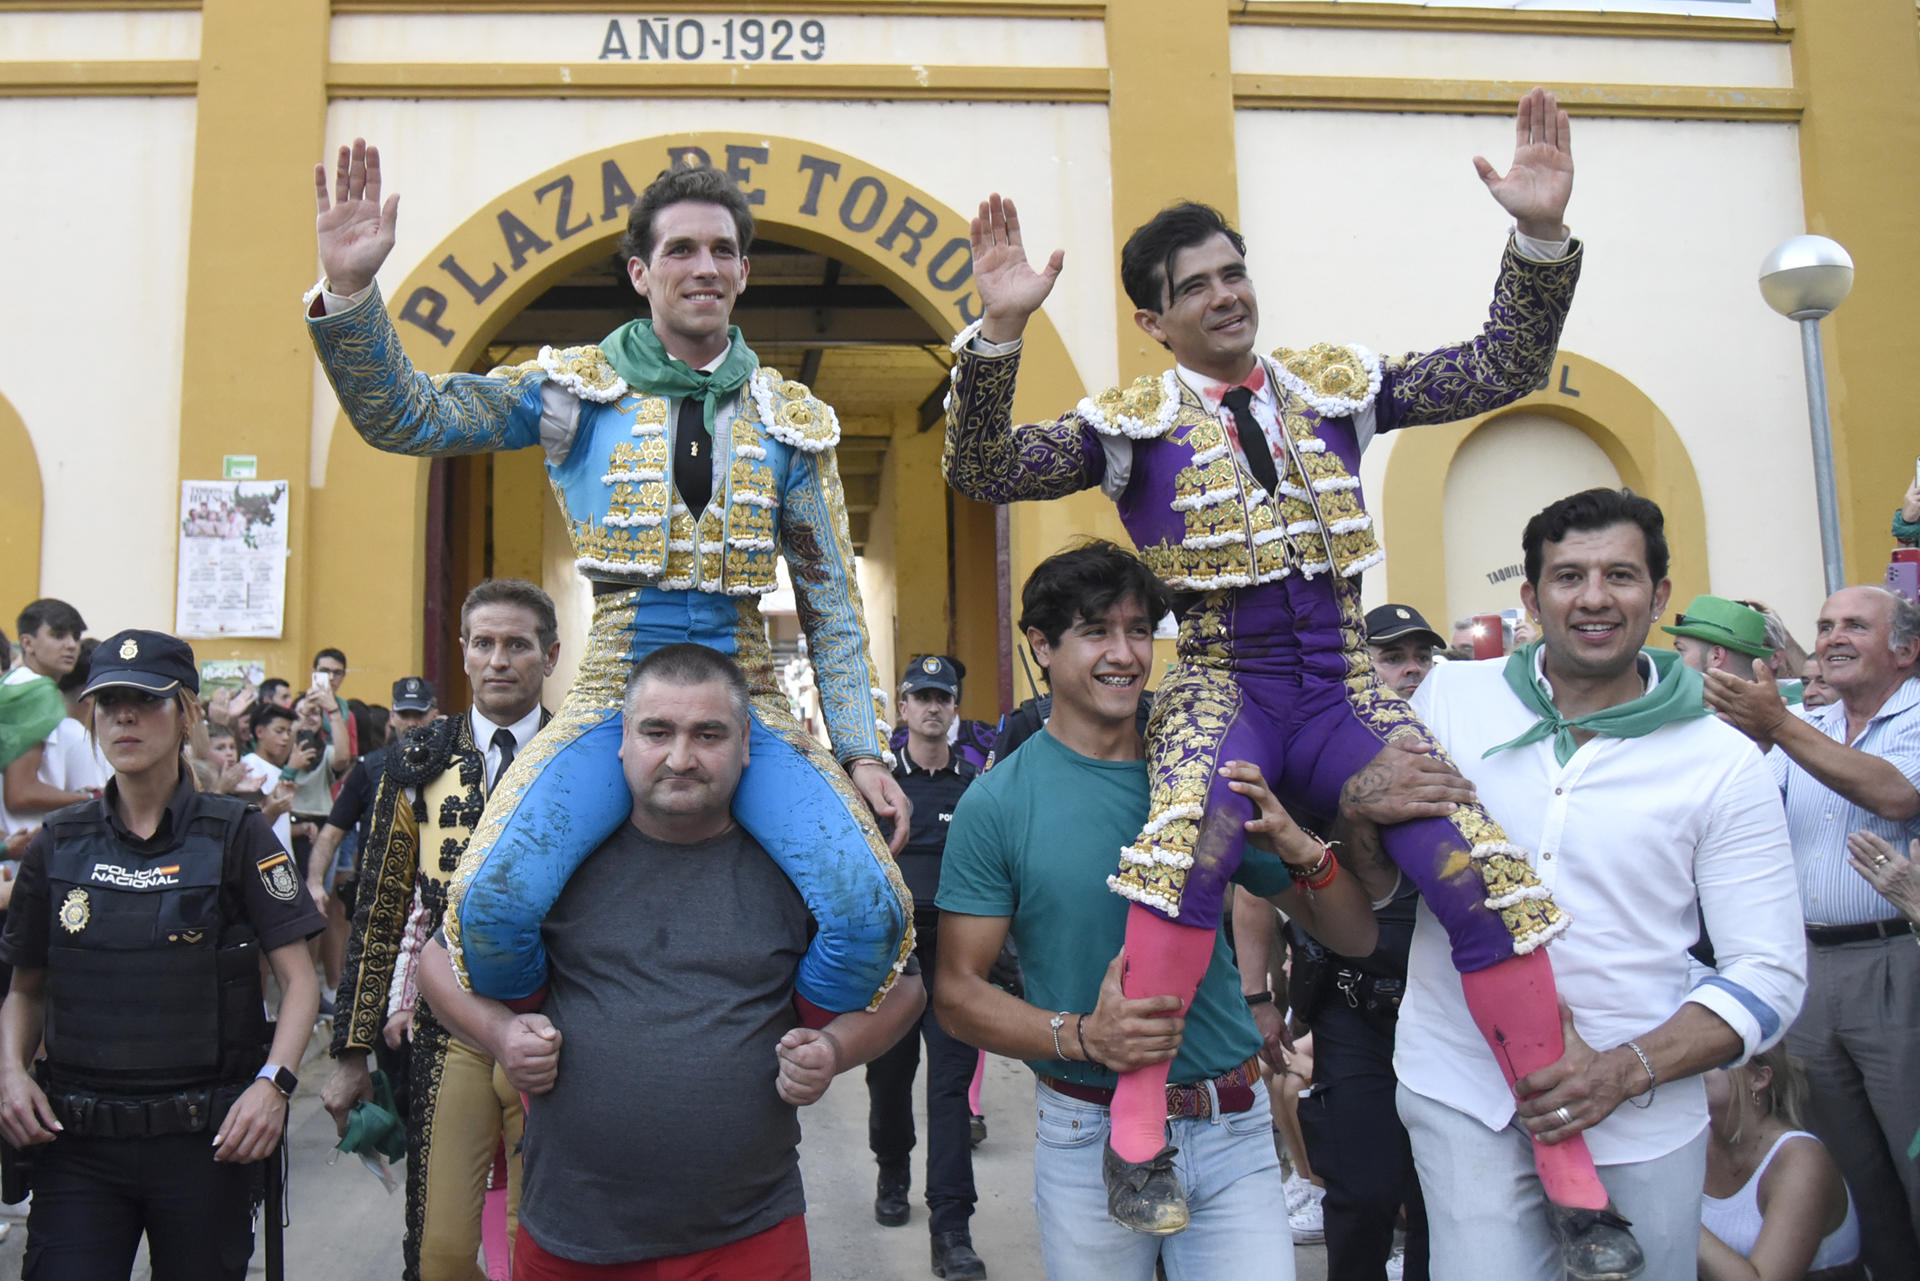 Los diestros Ginés Marín (i) y Joselito Adame salen a hombros durante la Feria Taurina de la Albahaca, que se celebra con motivo de las Fiestas de San Lorenzo, este viernes en el coso de la capital oscense. EFE/ Javier Blasco